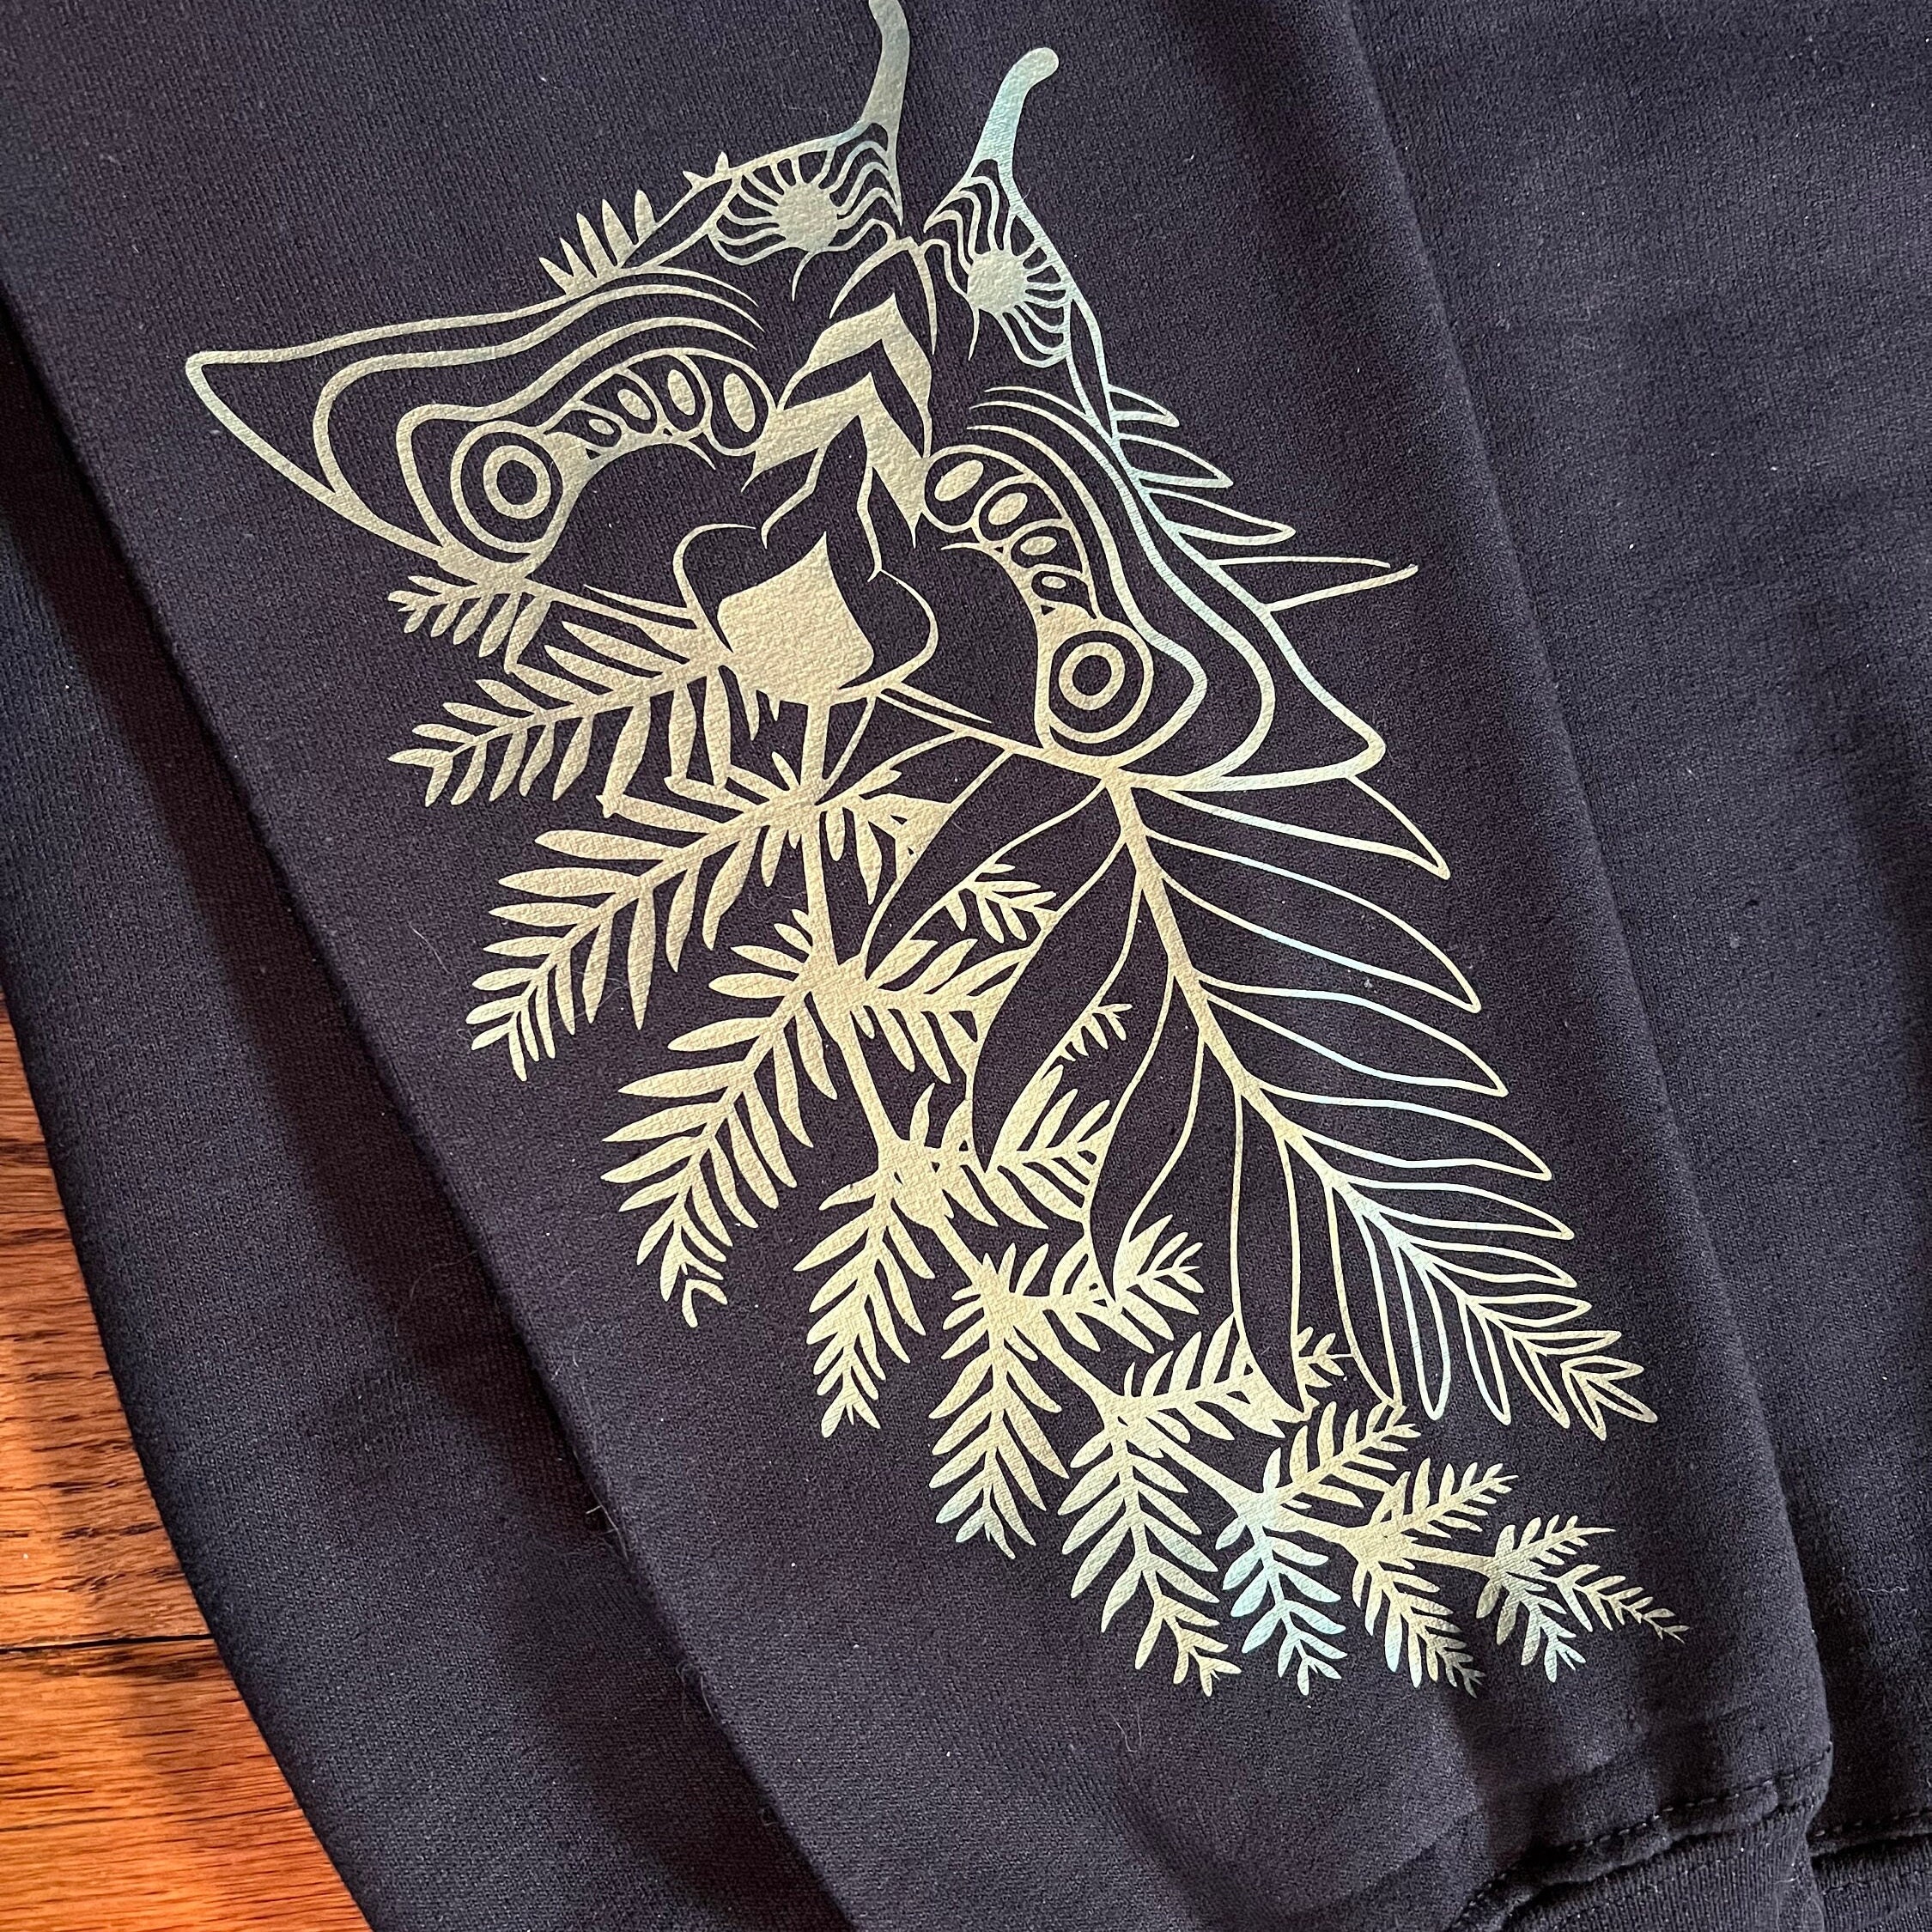 The Last Of Us Ellie'S Tattoo Sweatshirt